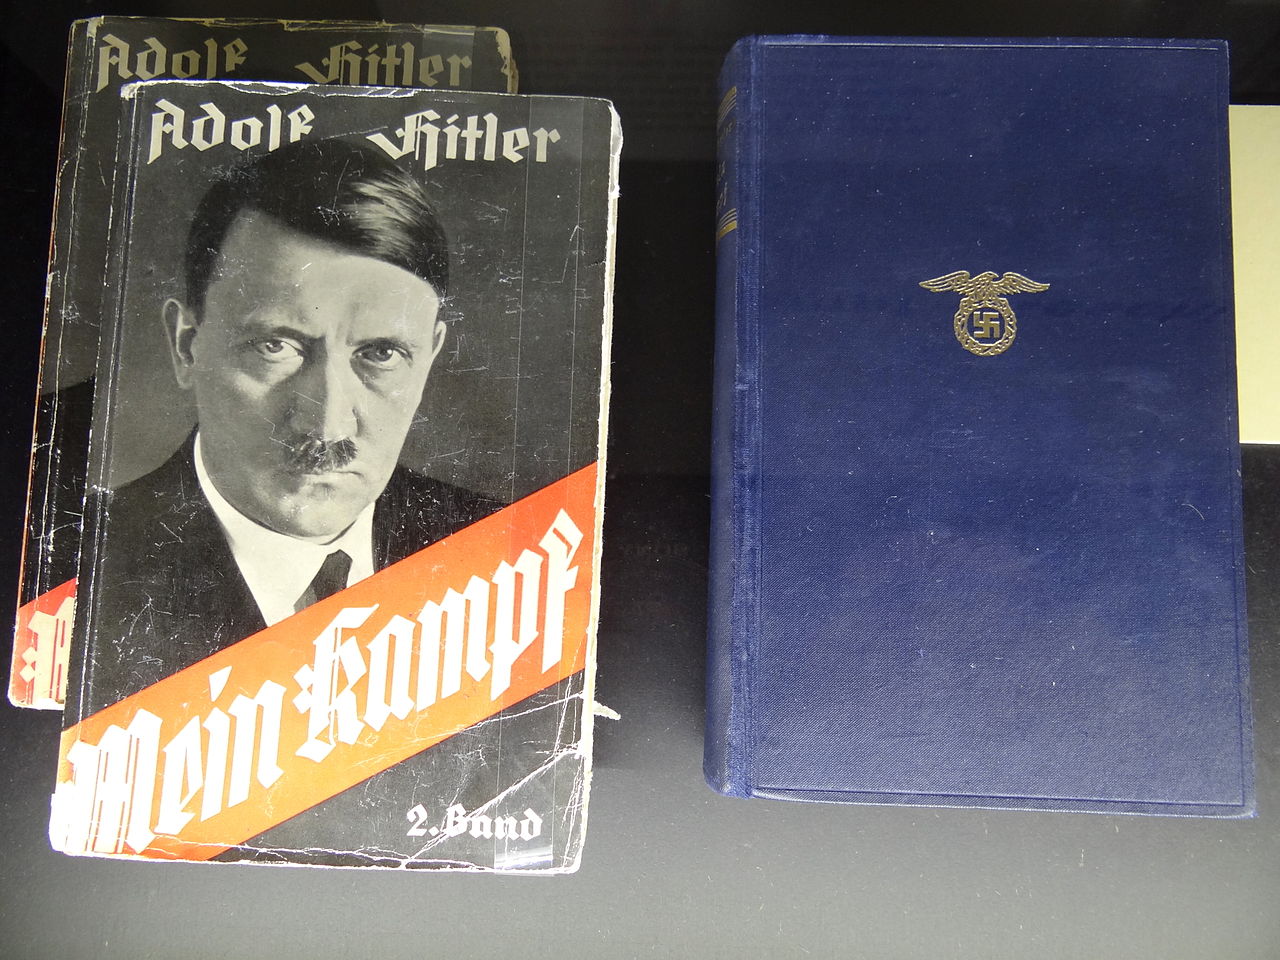 Edition française de Mein Kampf (Ma lutte ou mon combat